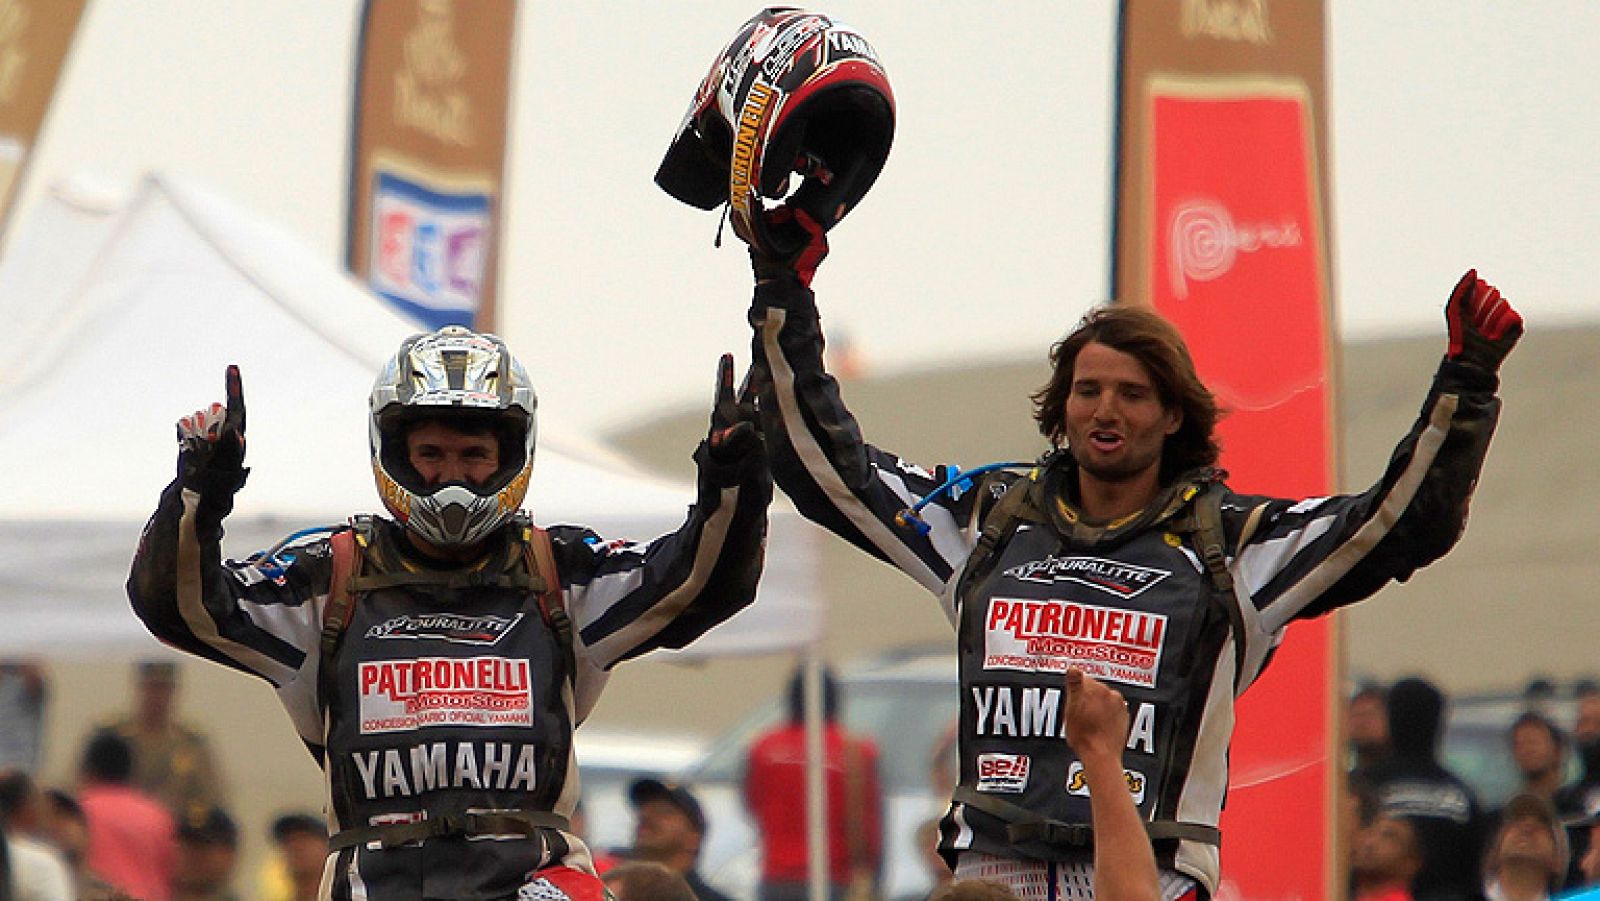 El piloto argentino de quads Alejandro Patronelli (Yamaha) se  mostró muy satisfecho tras revalidar el título de campeón del Rally  Dakar en un "año perfecto" y en el que su hermano Marcos (Yamaha)  firmó la segunda posición cerrando una magnífica ac